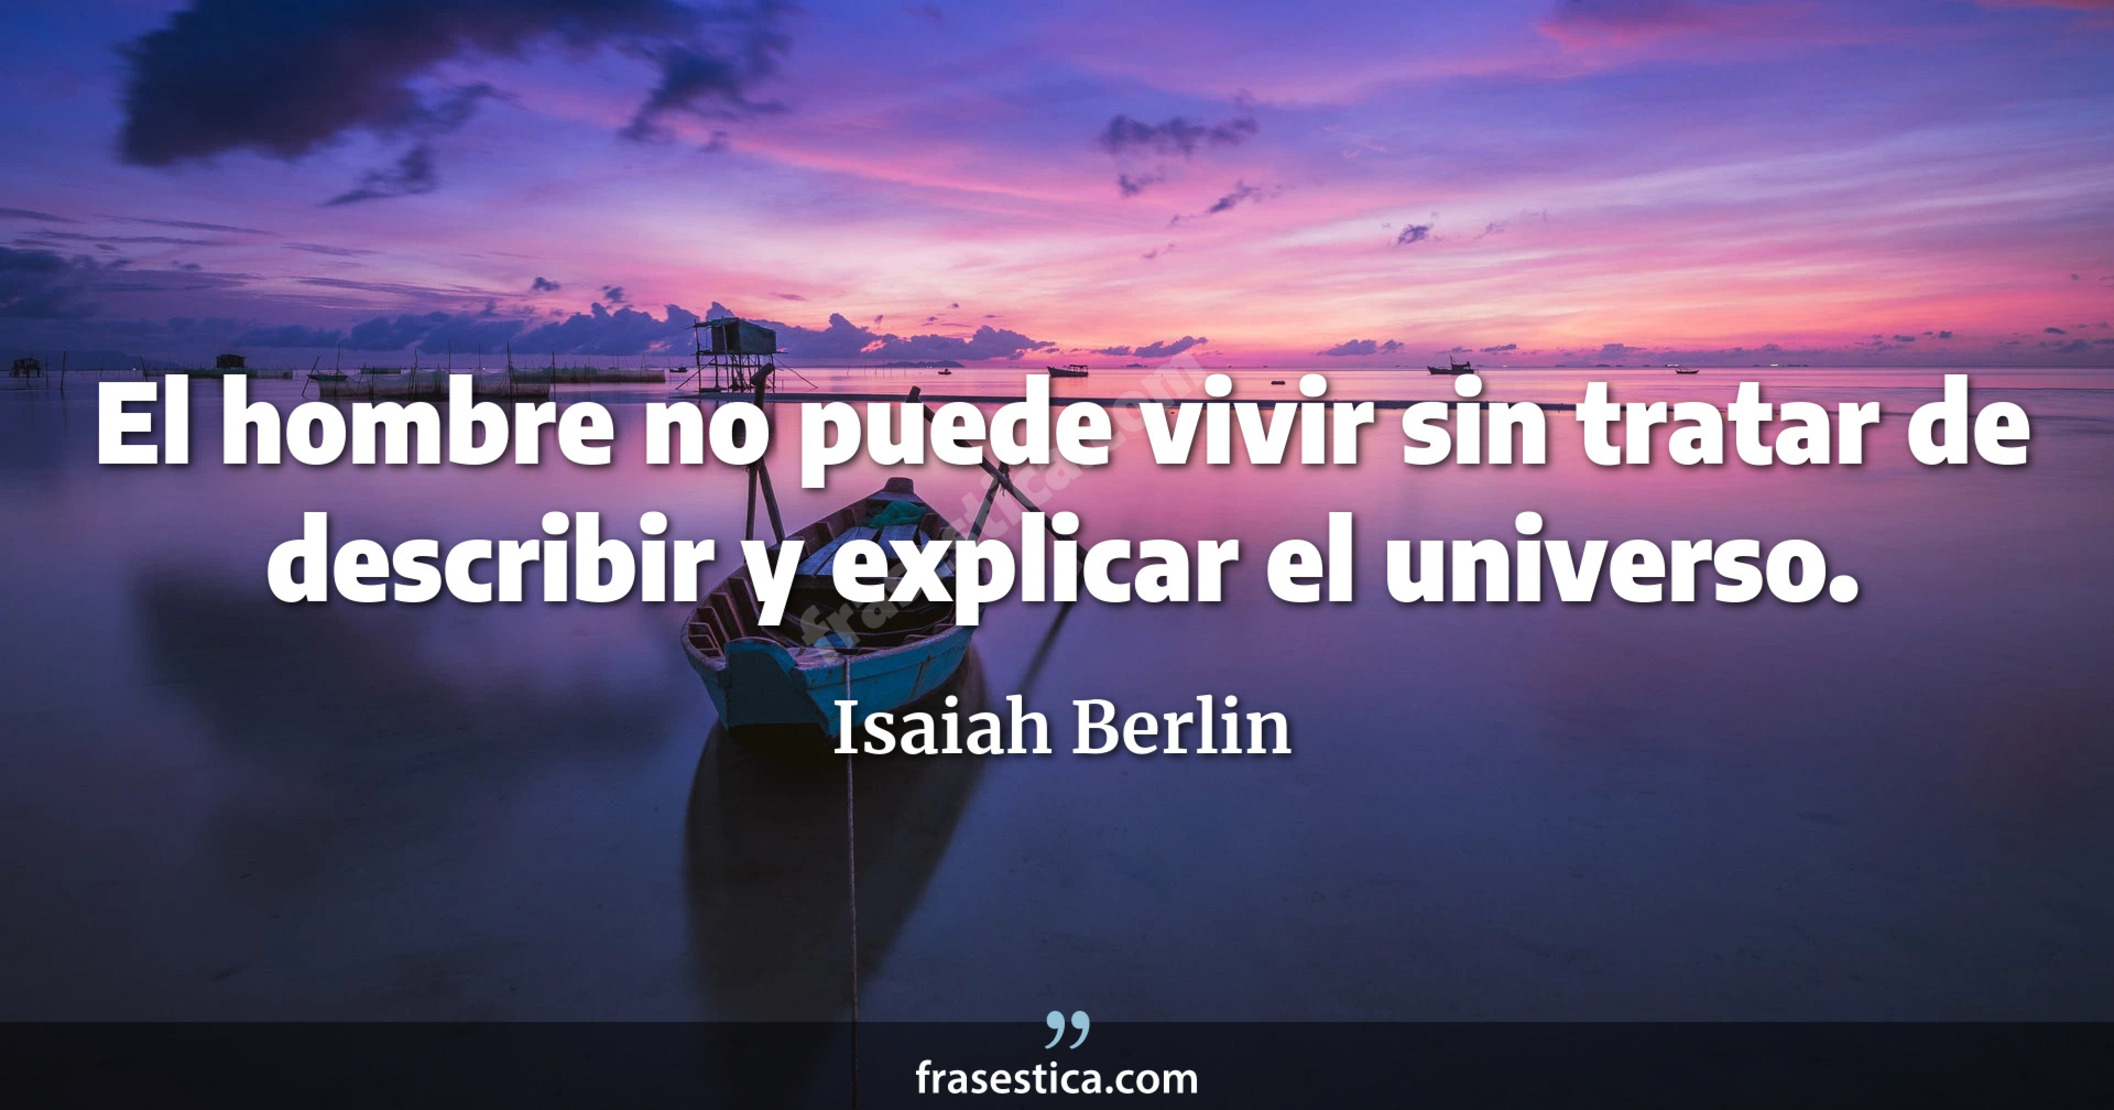 El hombre no puede vivir sin tratar de describir y explicar el universo. - Isaiah Berlin